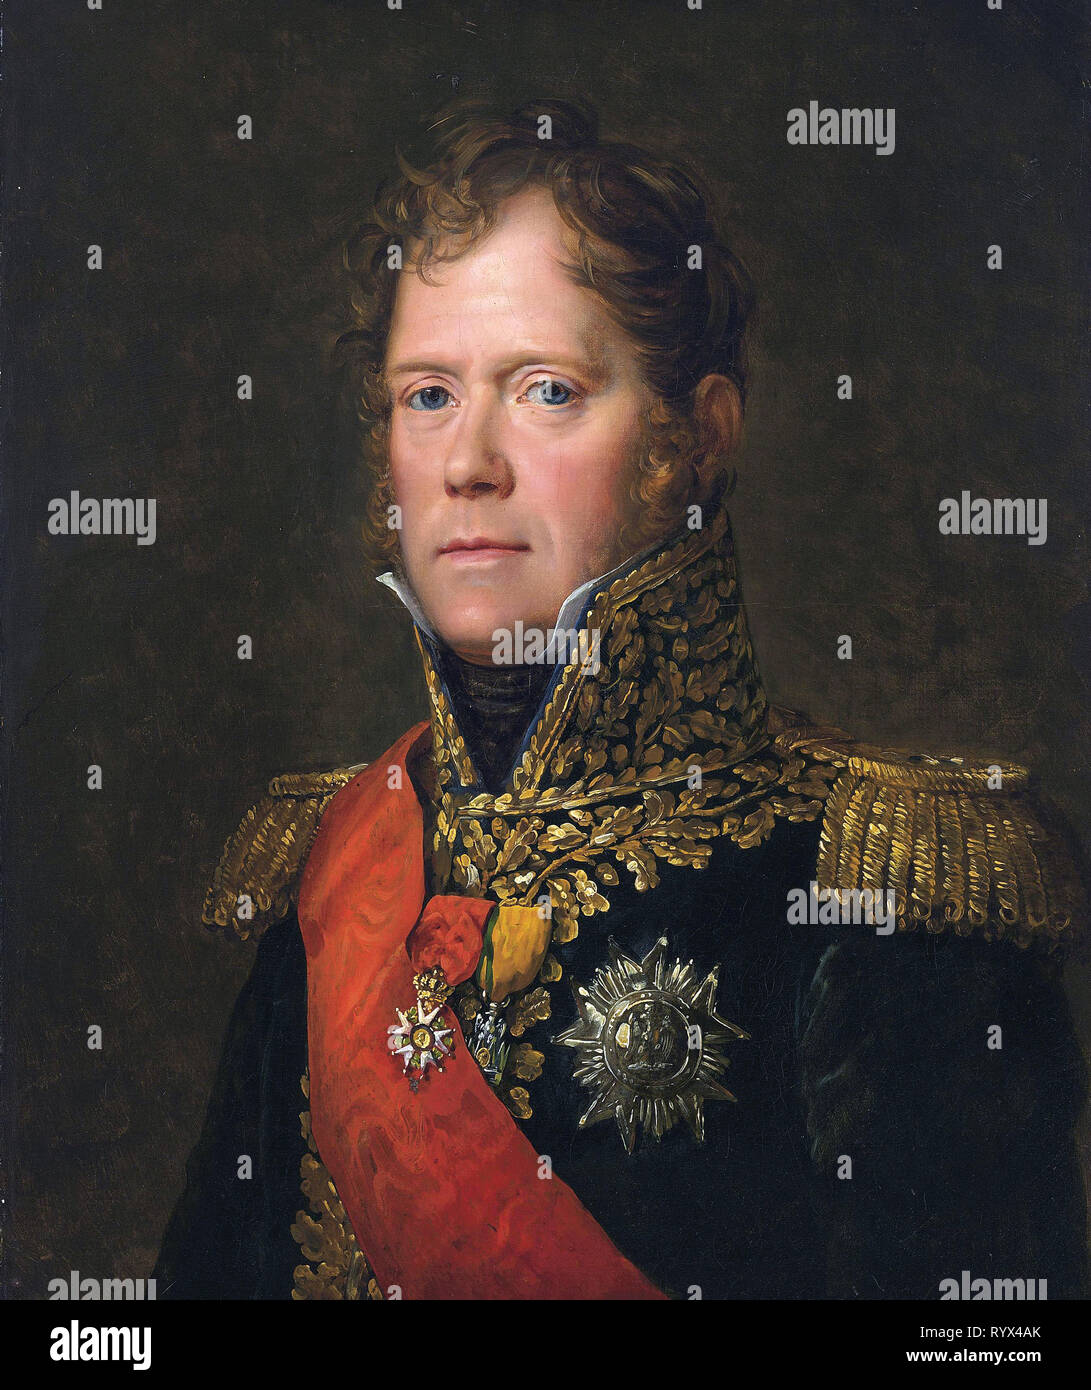 Michel Ney, Marschall des französischen Empire, Duc von Elchingen, Fürst von Moskau * Öl auf Leinwand * 65 x 55 cm* 1812 Stockfoto